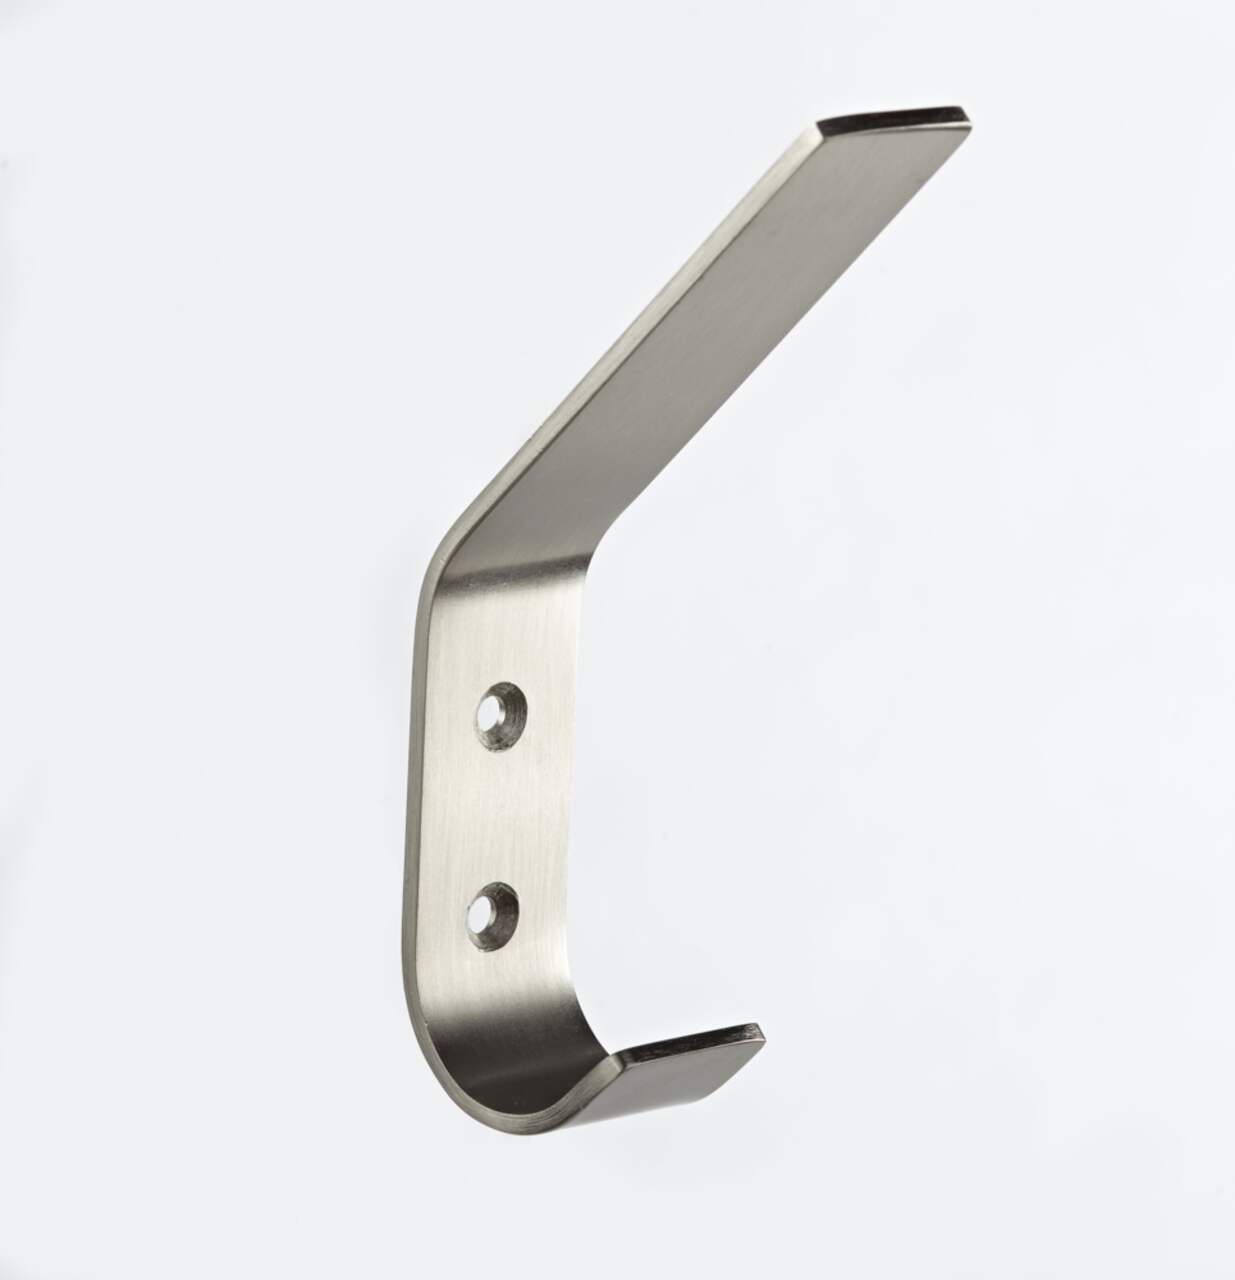 CANVAS Bent Stainless Steel Single Hook, Nickel